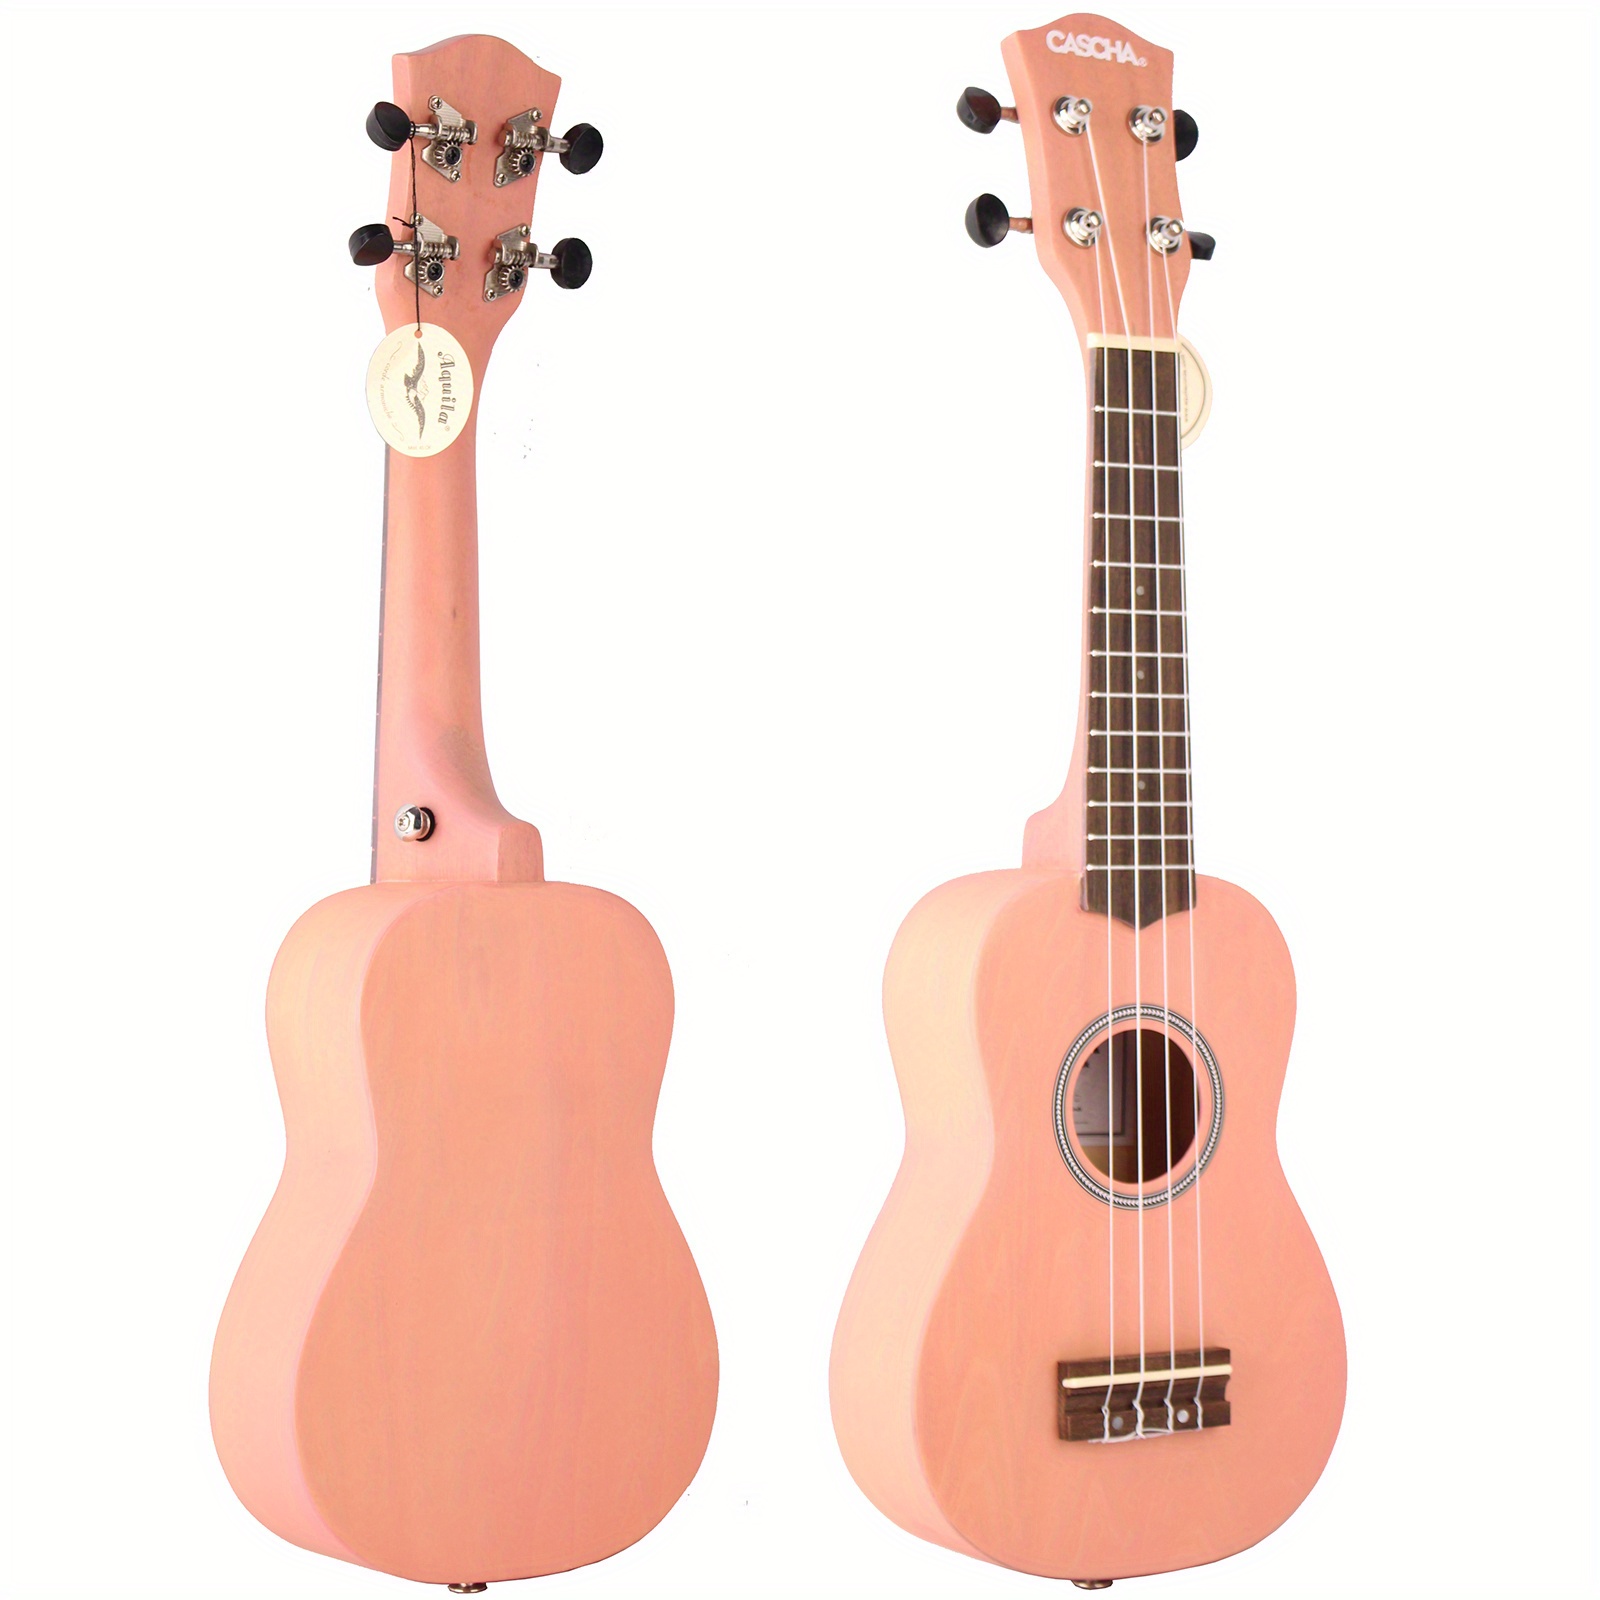  four string ukulele para adultos acusticas para adultos ukulele  wood beginner ukulele wood ukulele adult ukulele carbon fiber wooden child  Fingerboard : Musical Instruments